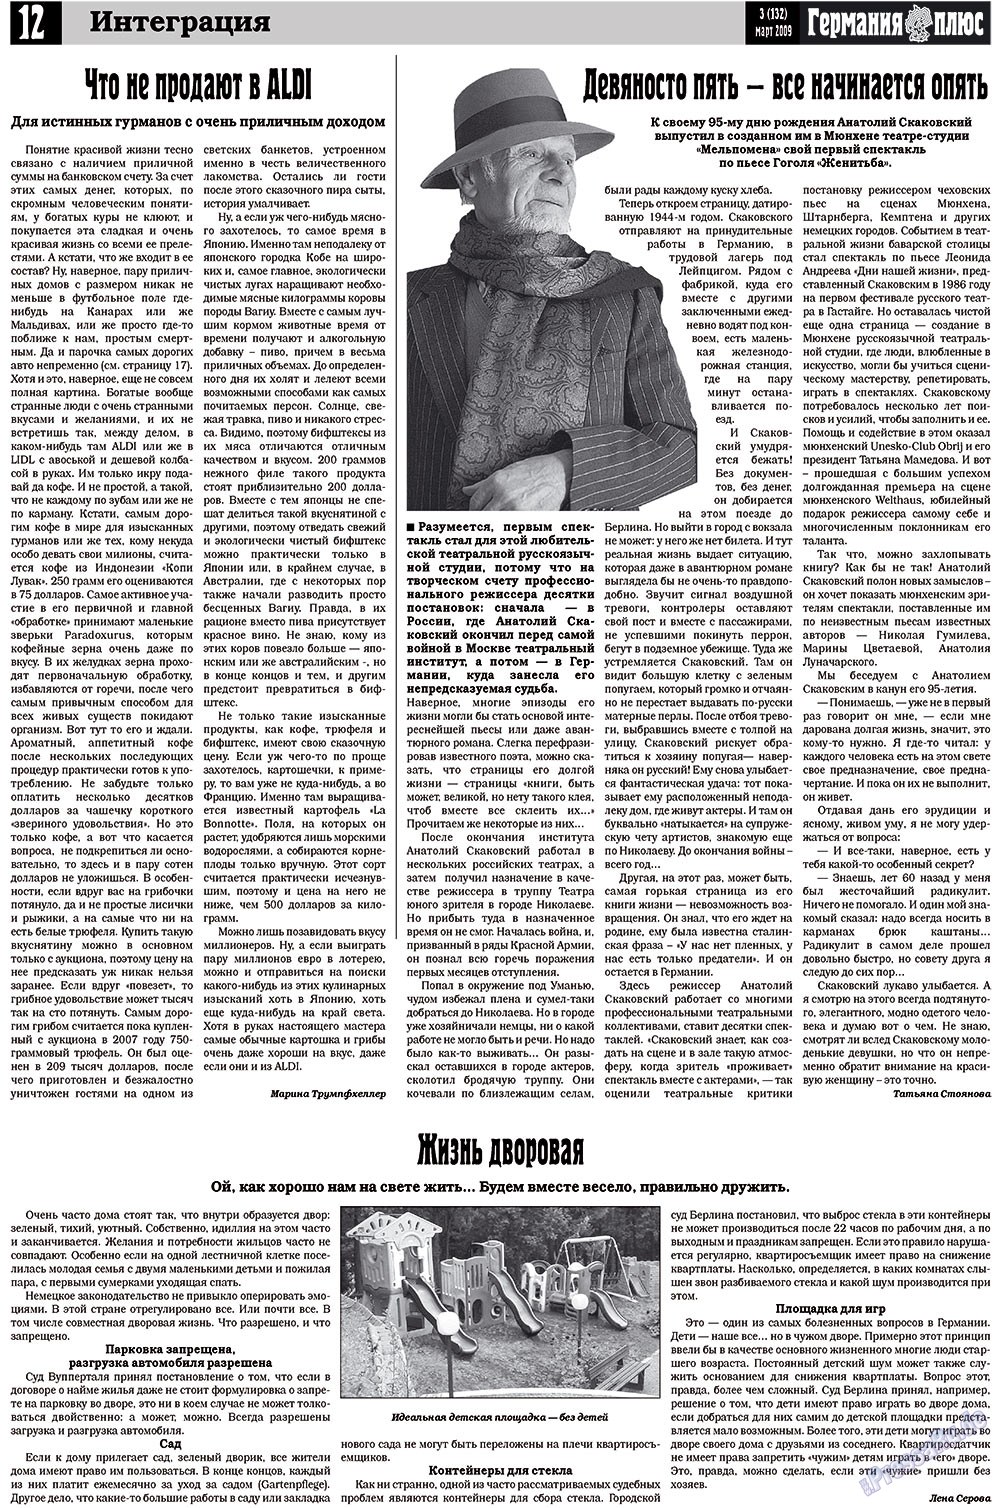 Германия плюс, газета. 2009 №3 стр.16